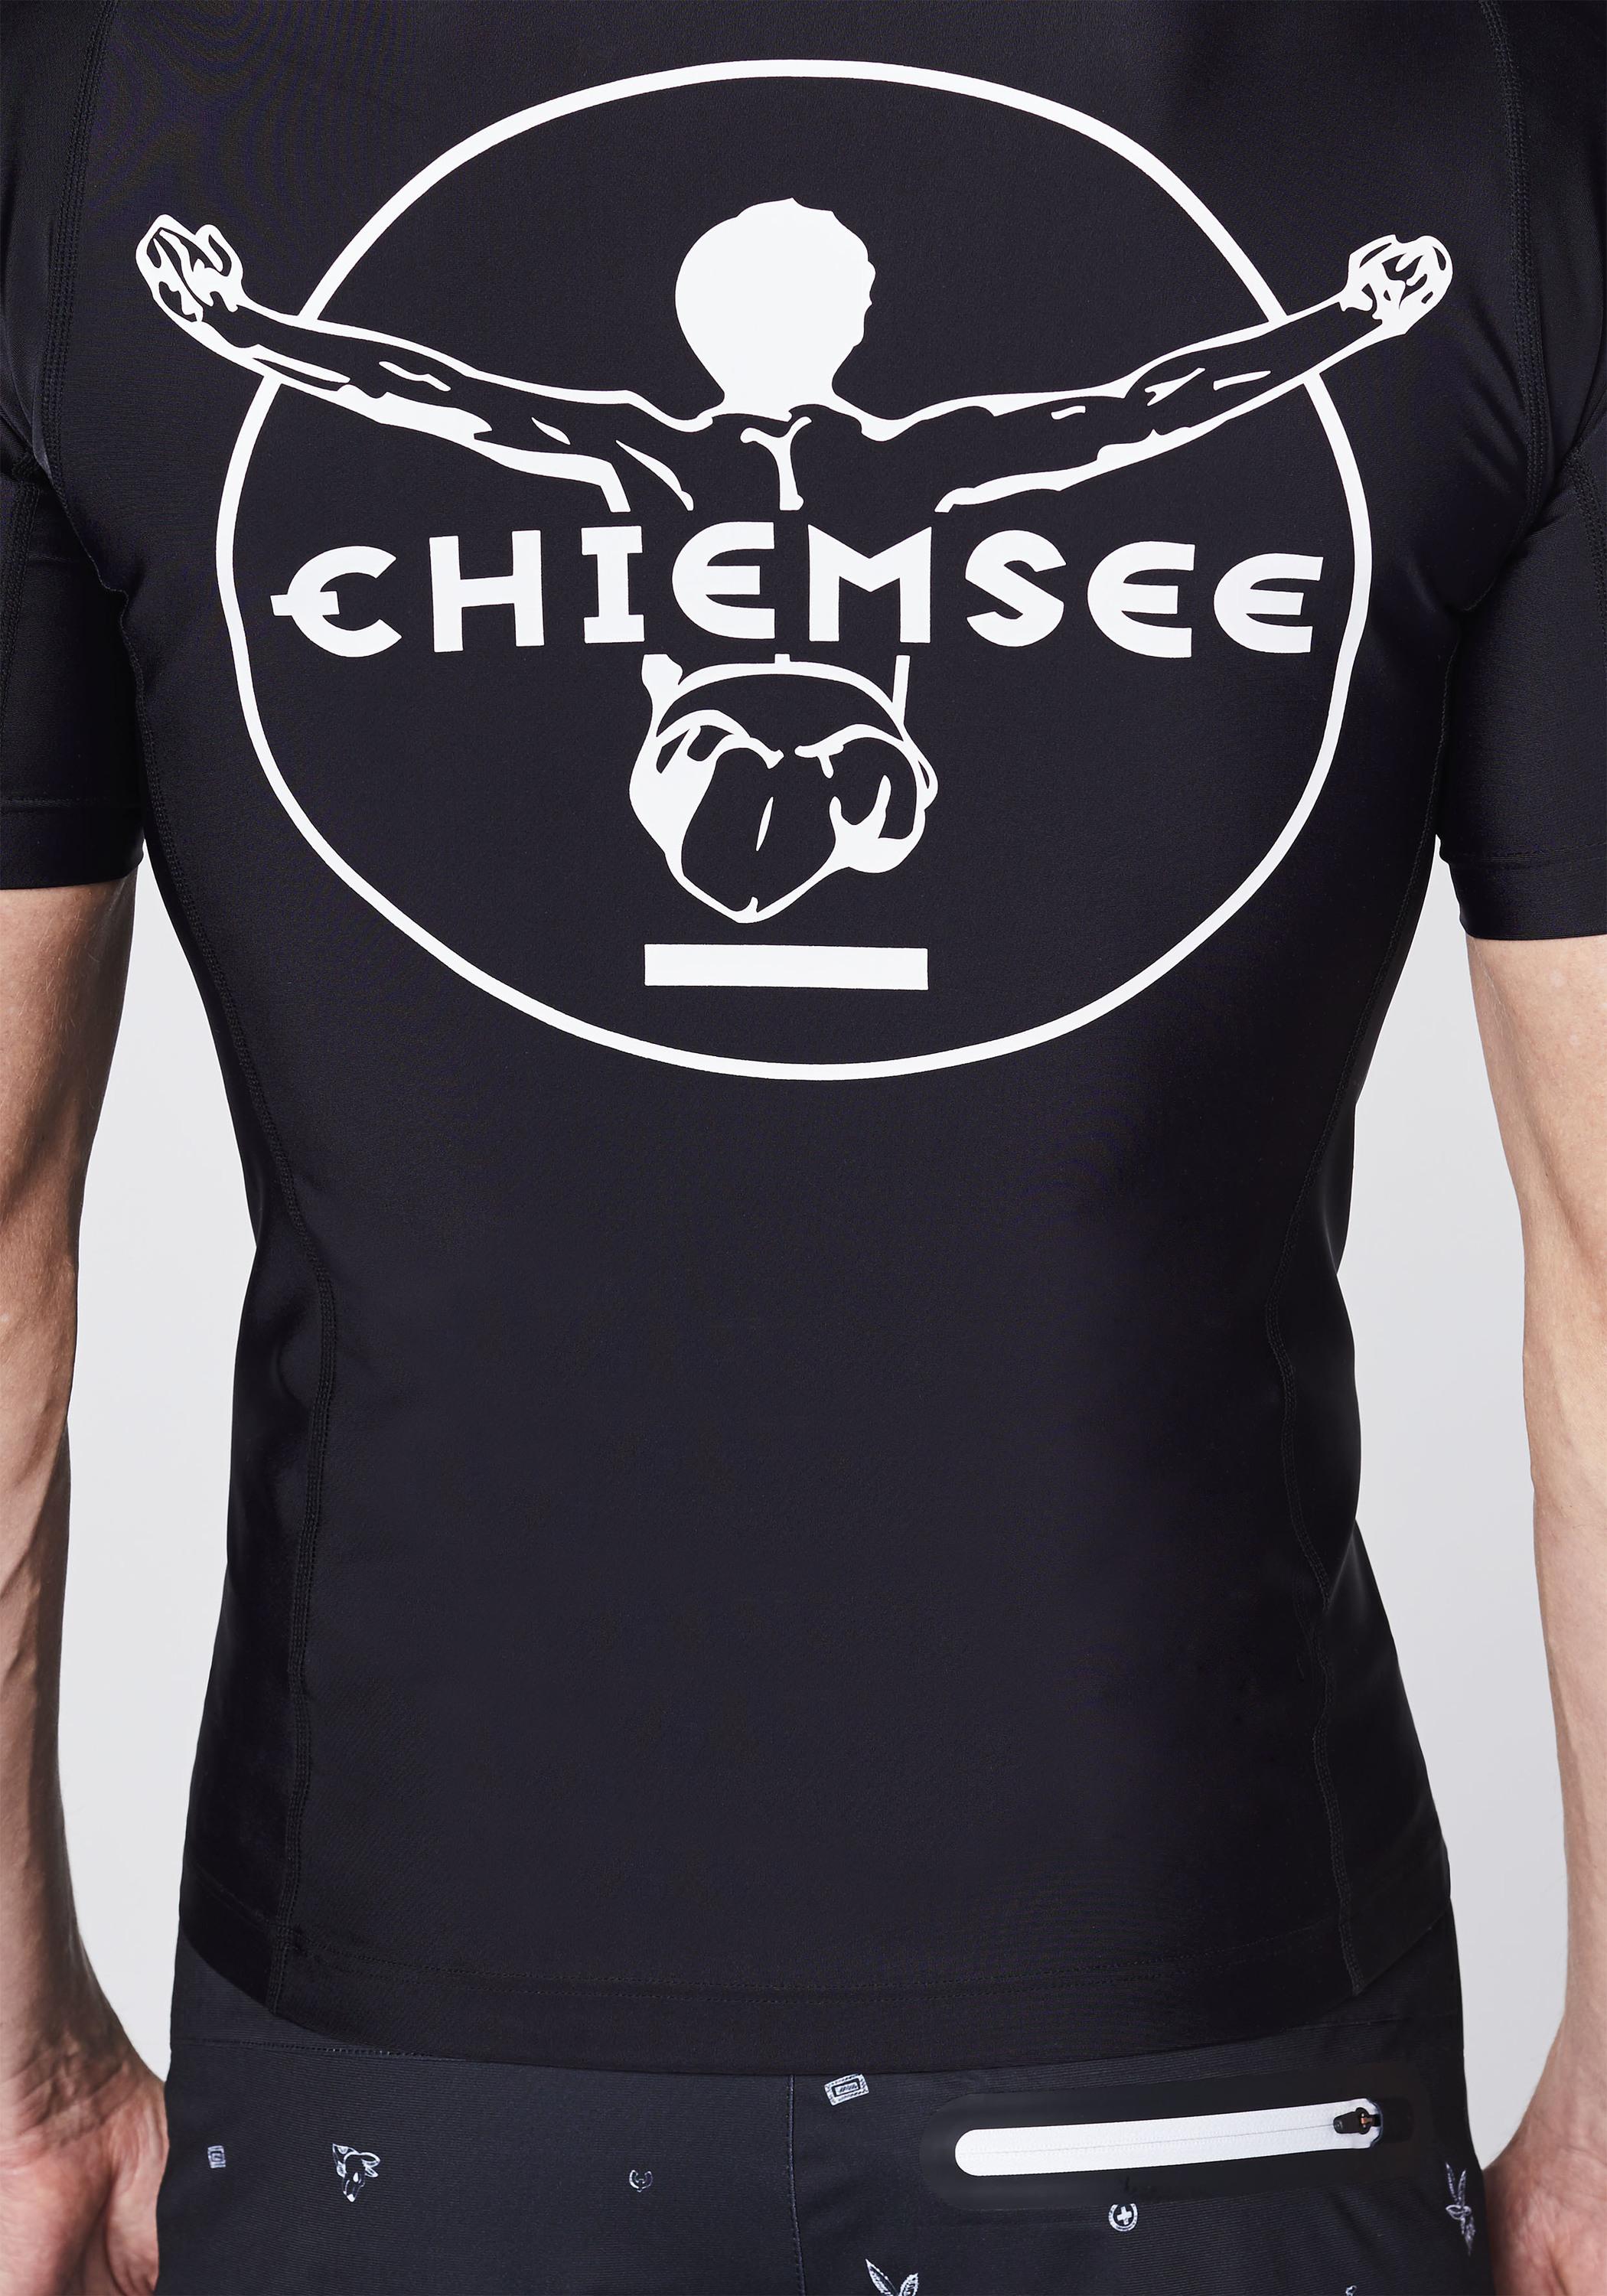 Chiemsee Badeshirt Surf von Online Shirt Shop kaufen Deep Black SportScheck new im